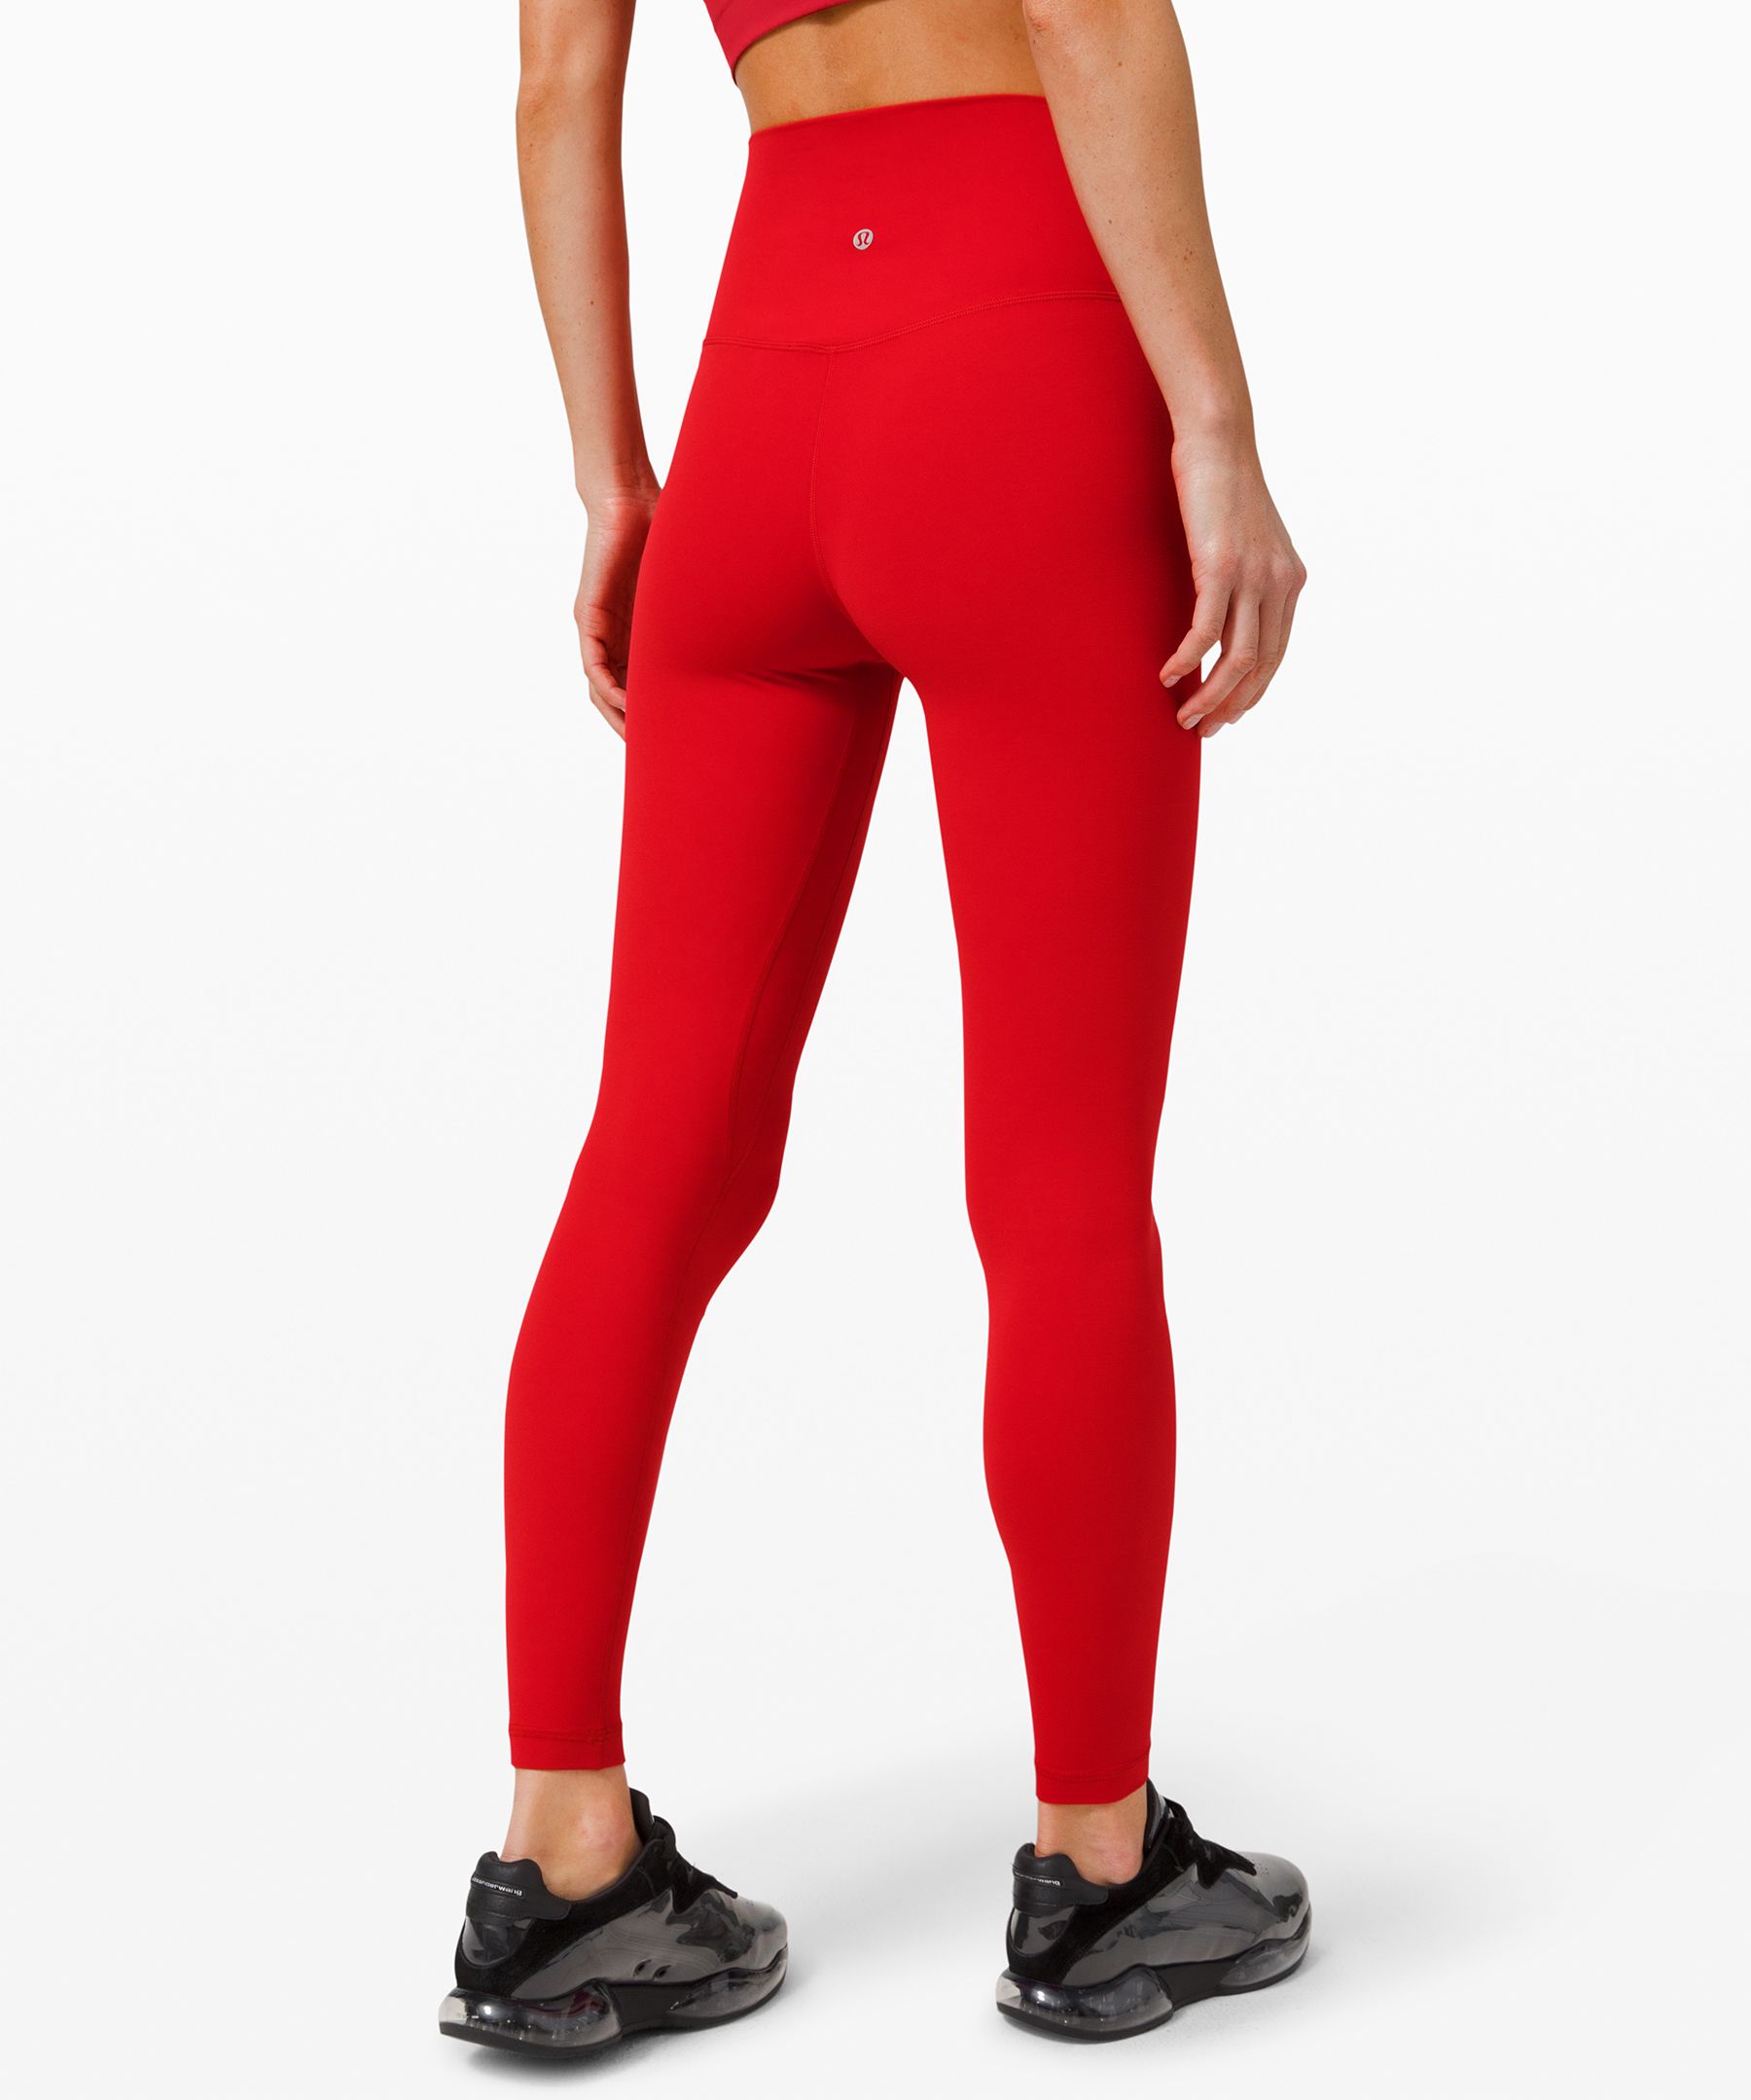 lululemon leggings red